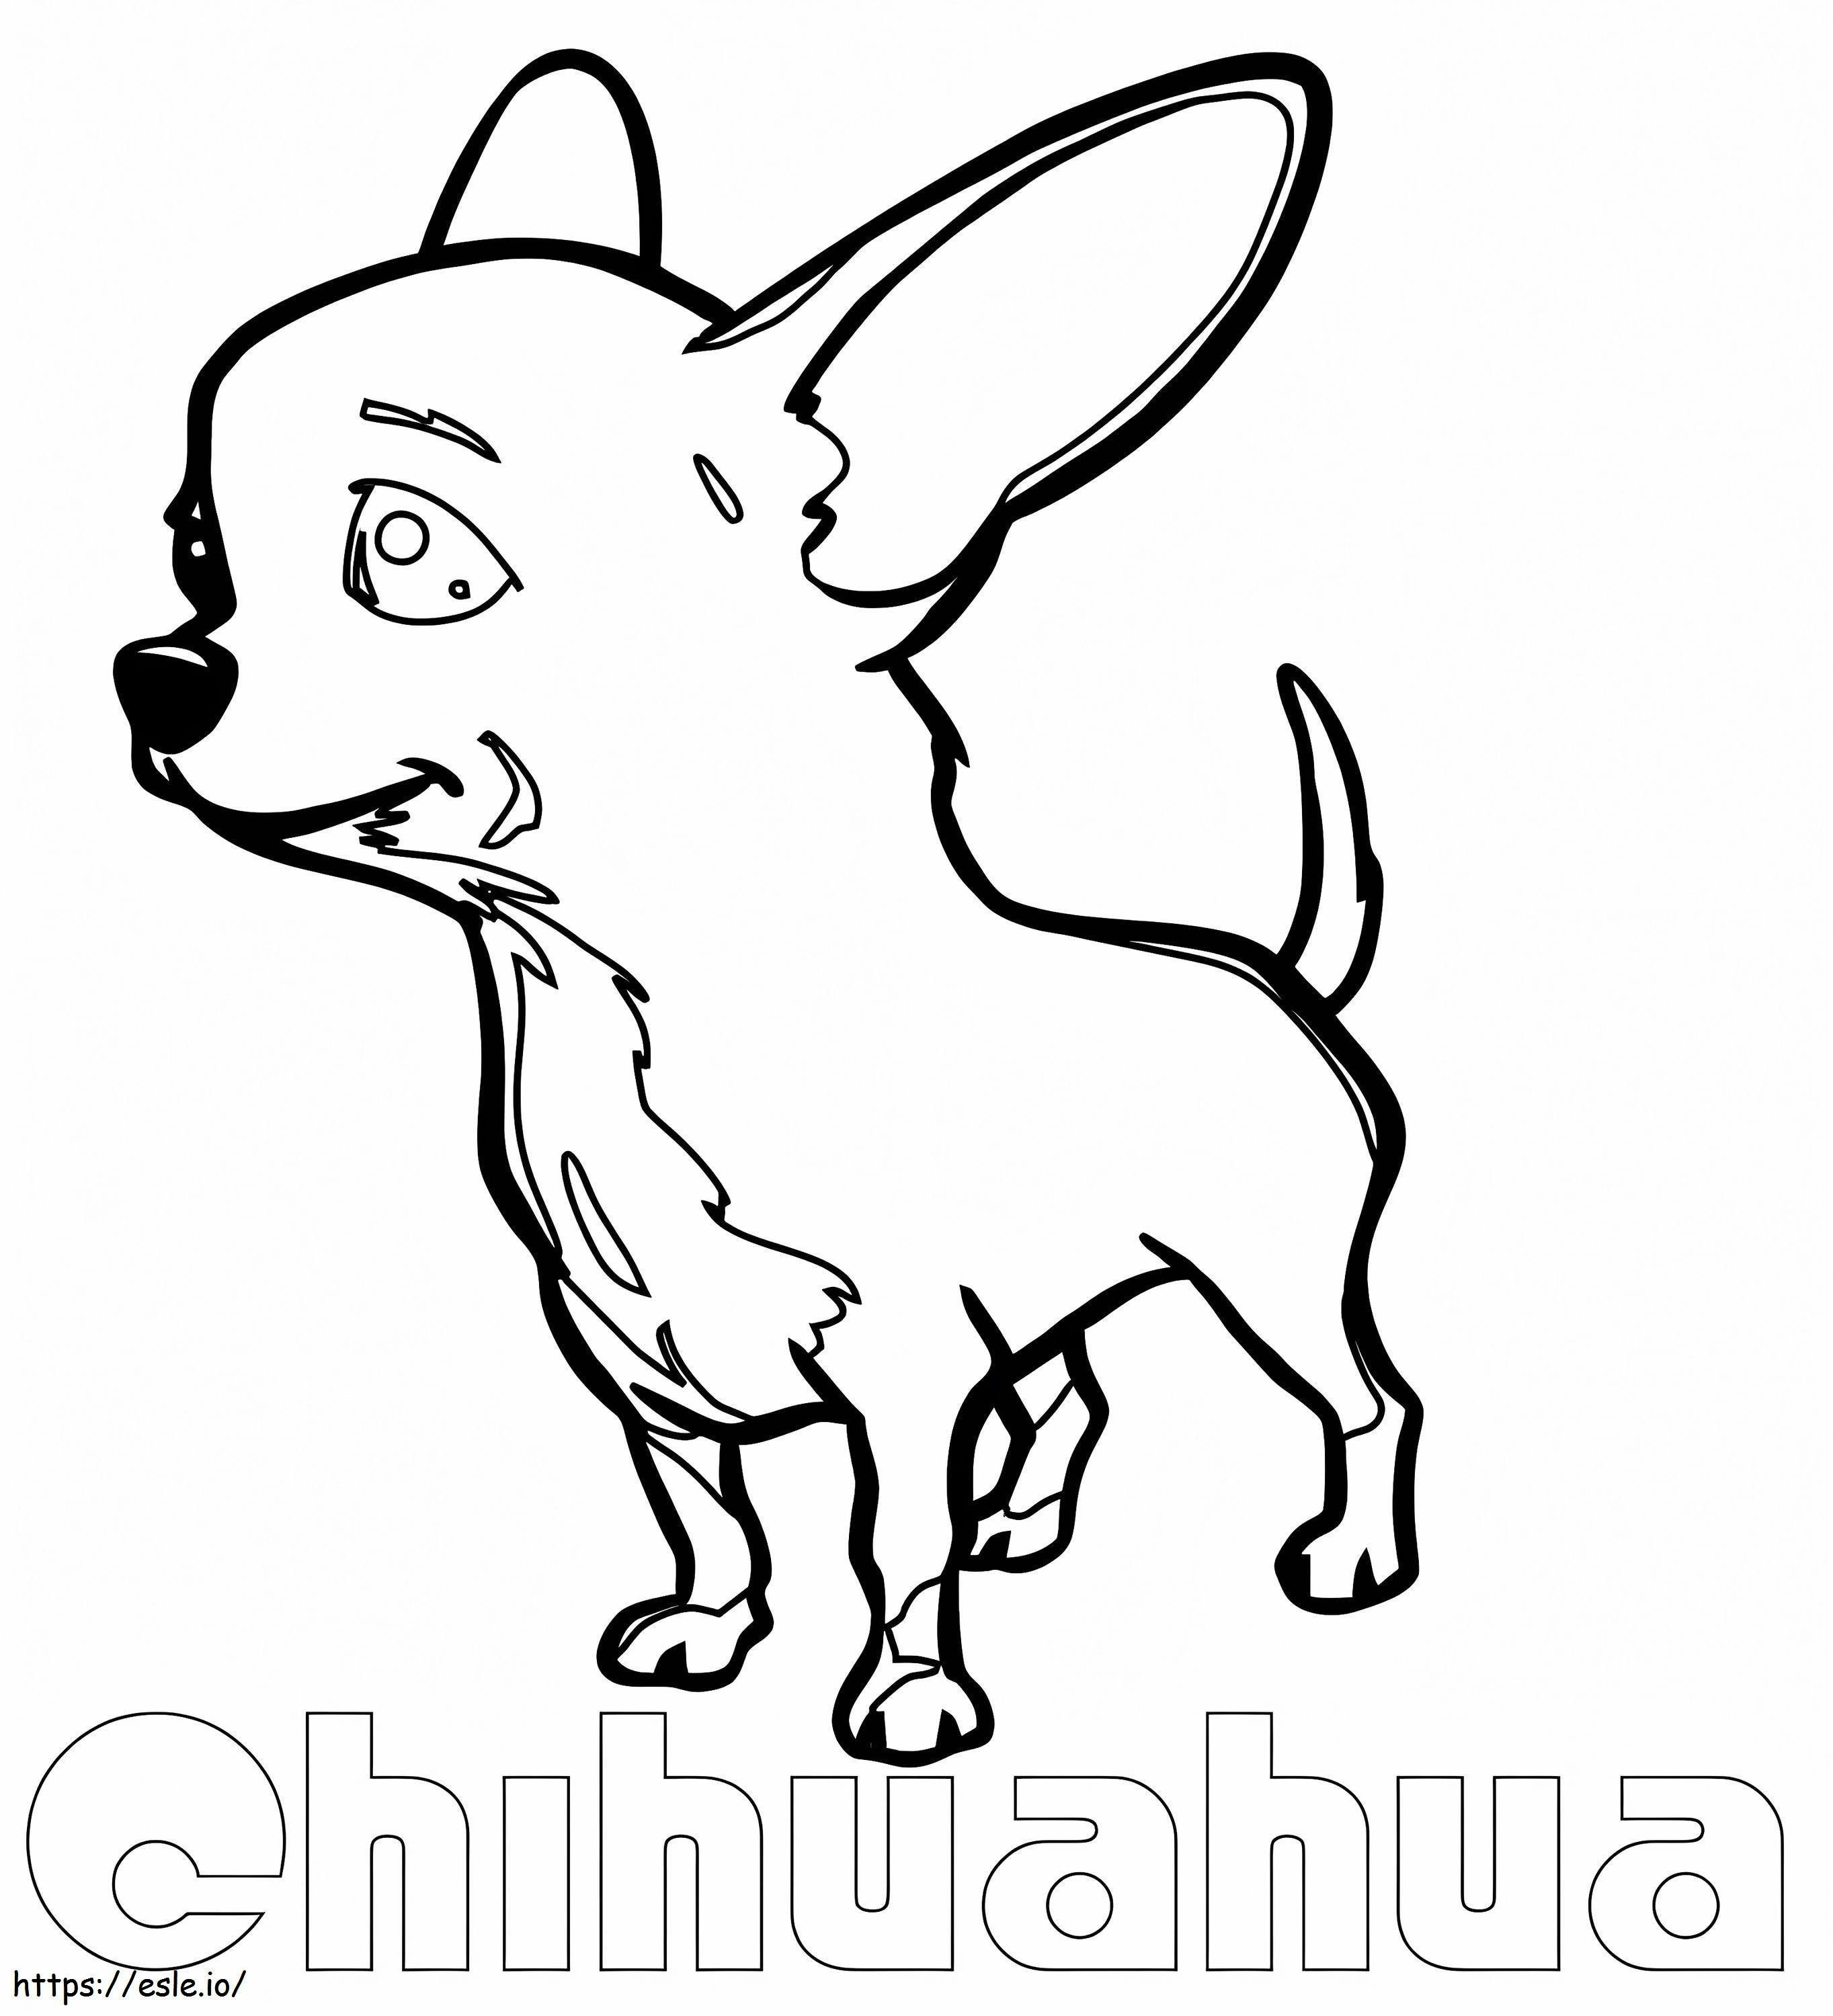 Um chihuahua fofo para colorir